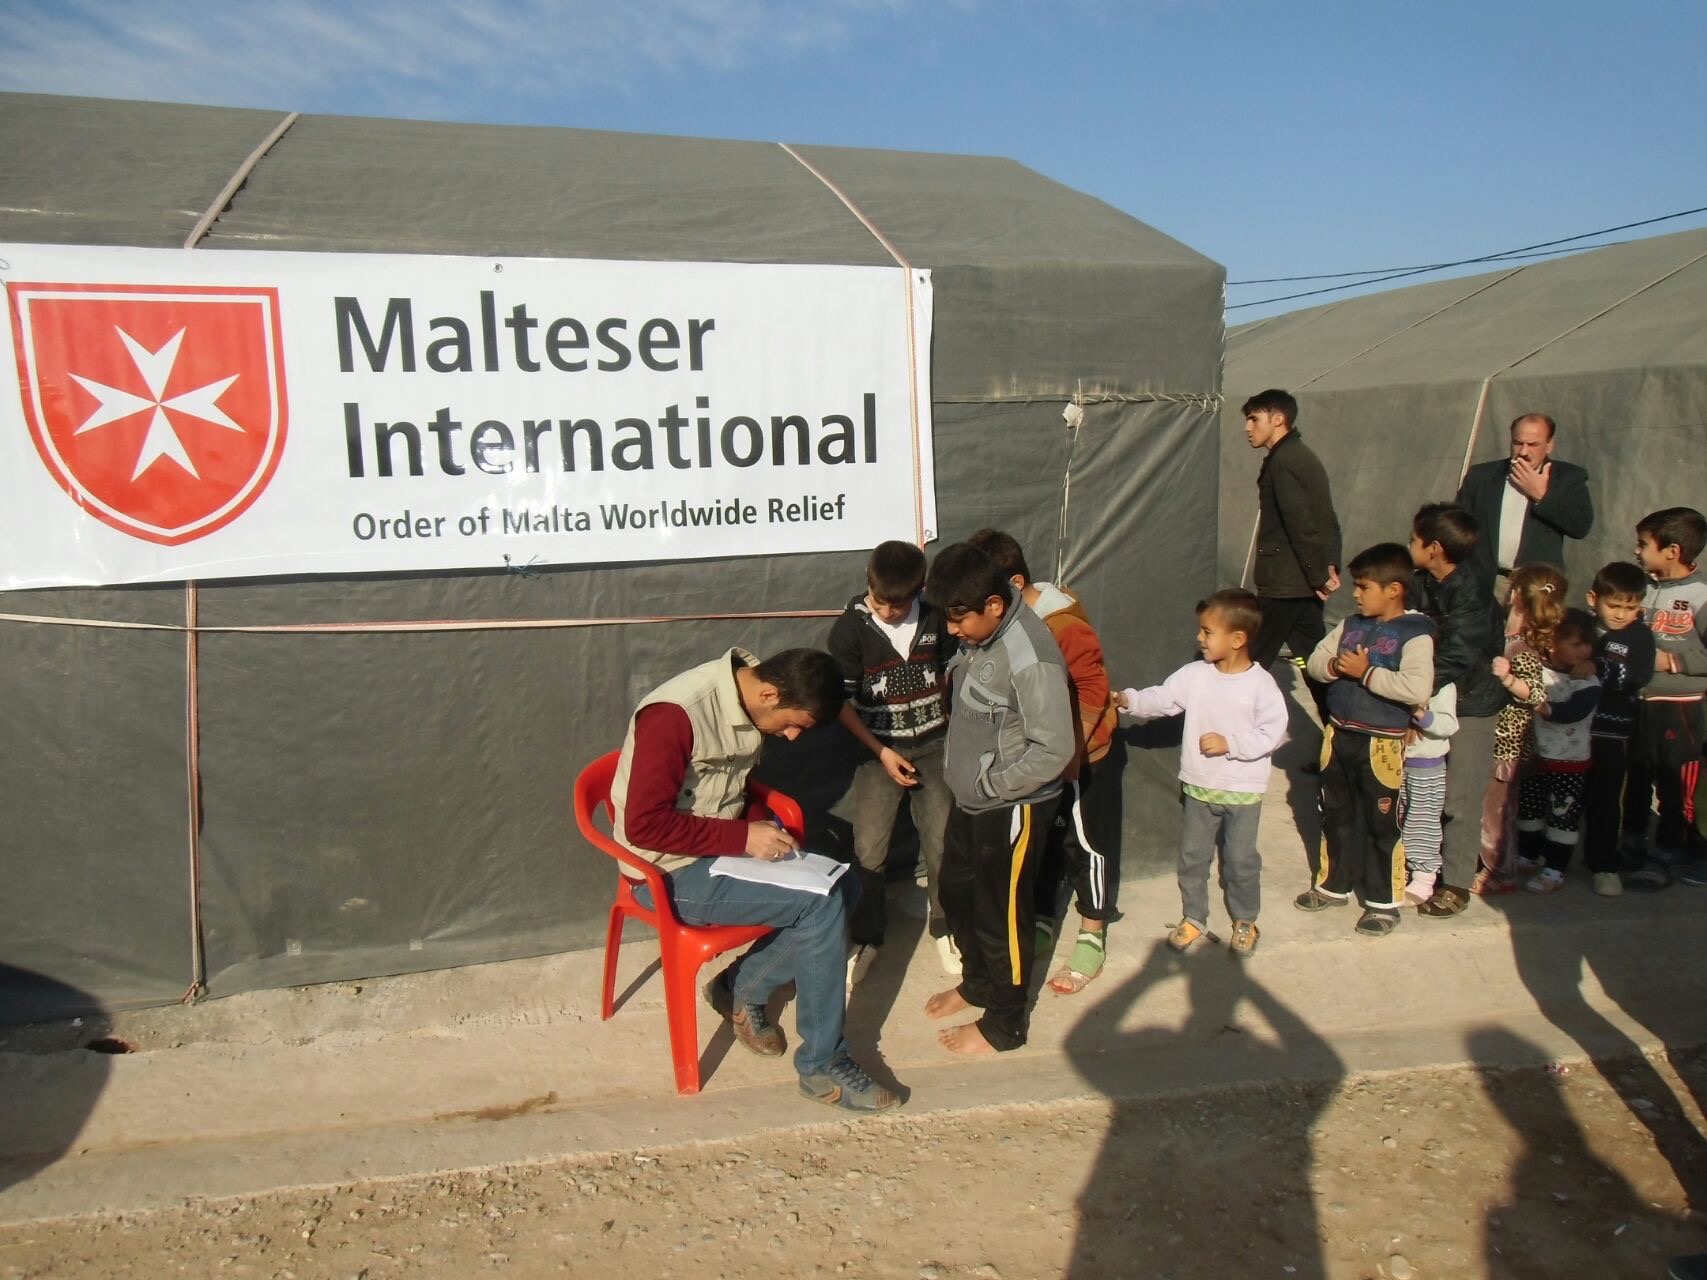 In zwei Flüchtlingslagern in der Region Dohuk (Nordirak) verteilt Malteser International Winterschuhe, Hosen, Pullover, Schals, Handschuhe und Mützen an rund 13.000 Flüchtlingskinder.